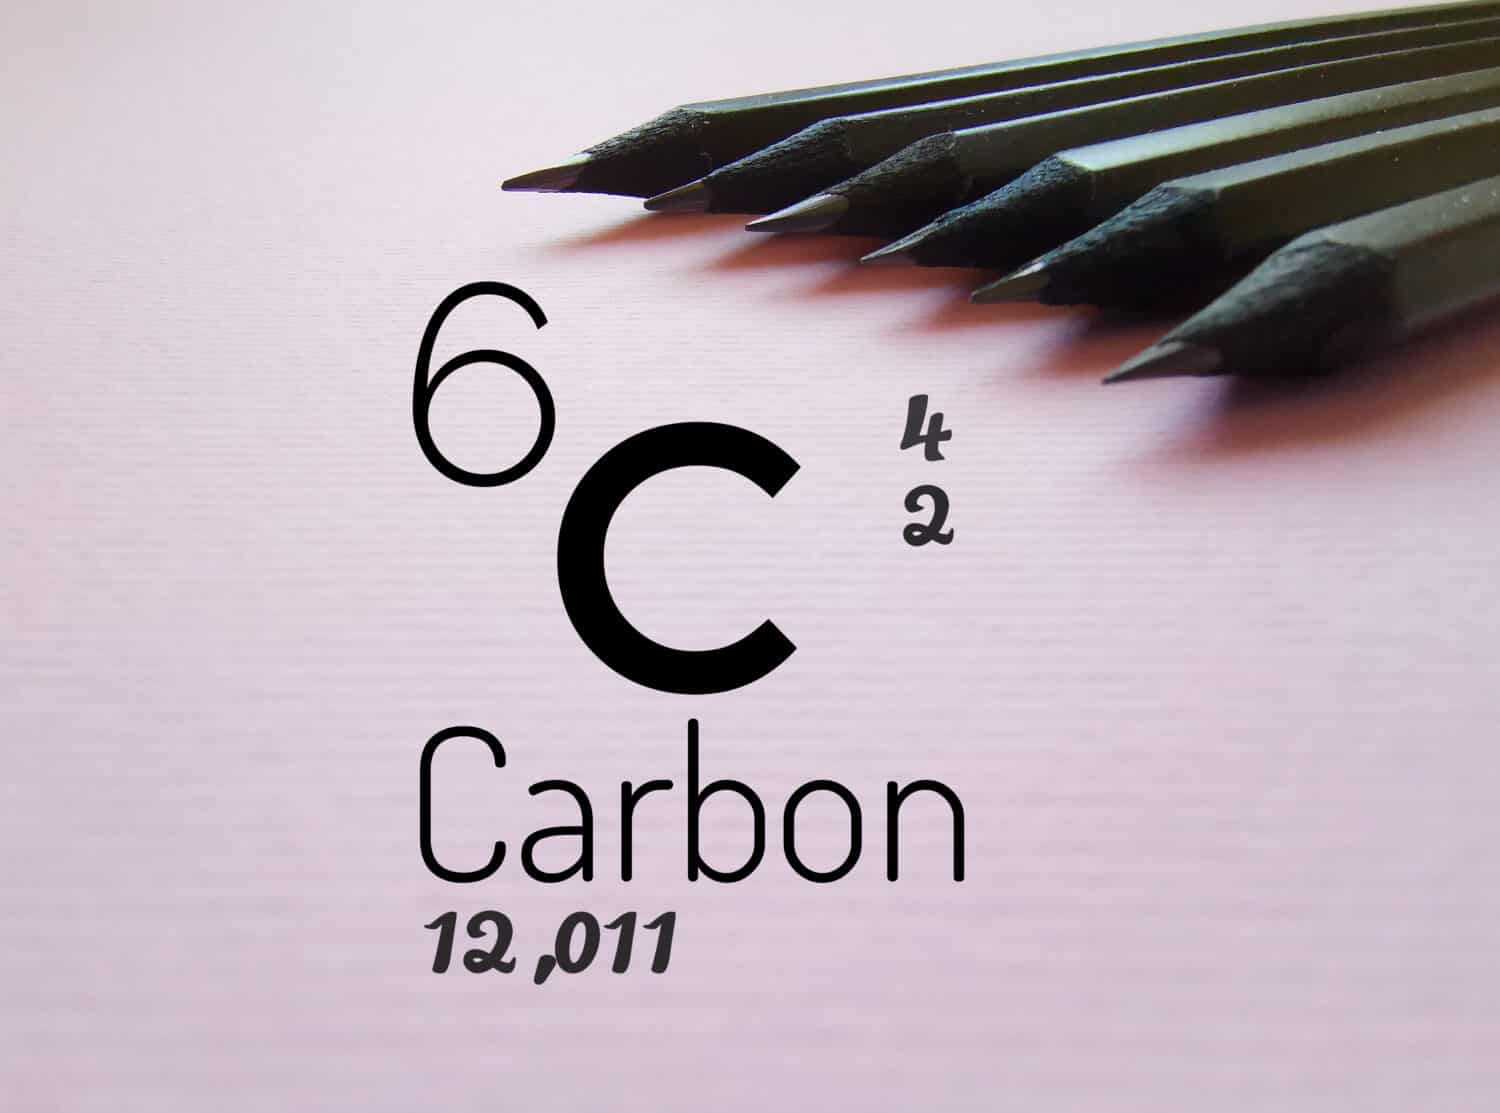 Il carbonio è un elemento chimico della tavola periodica.  Simbolo dell'elemento chimico carbonio con dati atomici (numero atomico, massa e configurazione elettronica) e matite di grafite sullo sfondo.